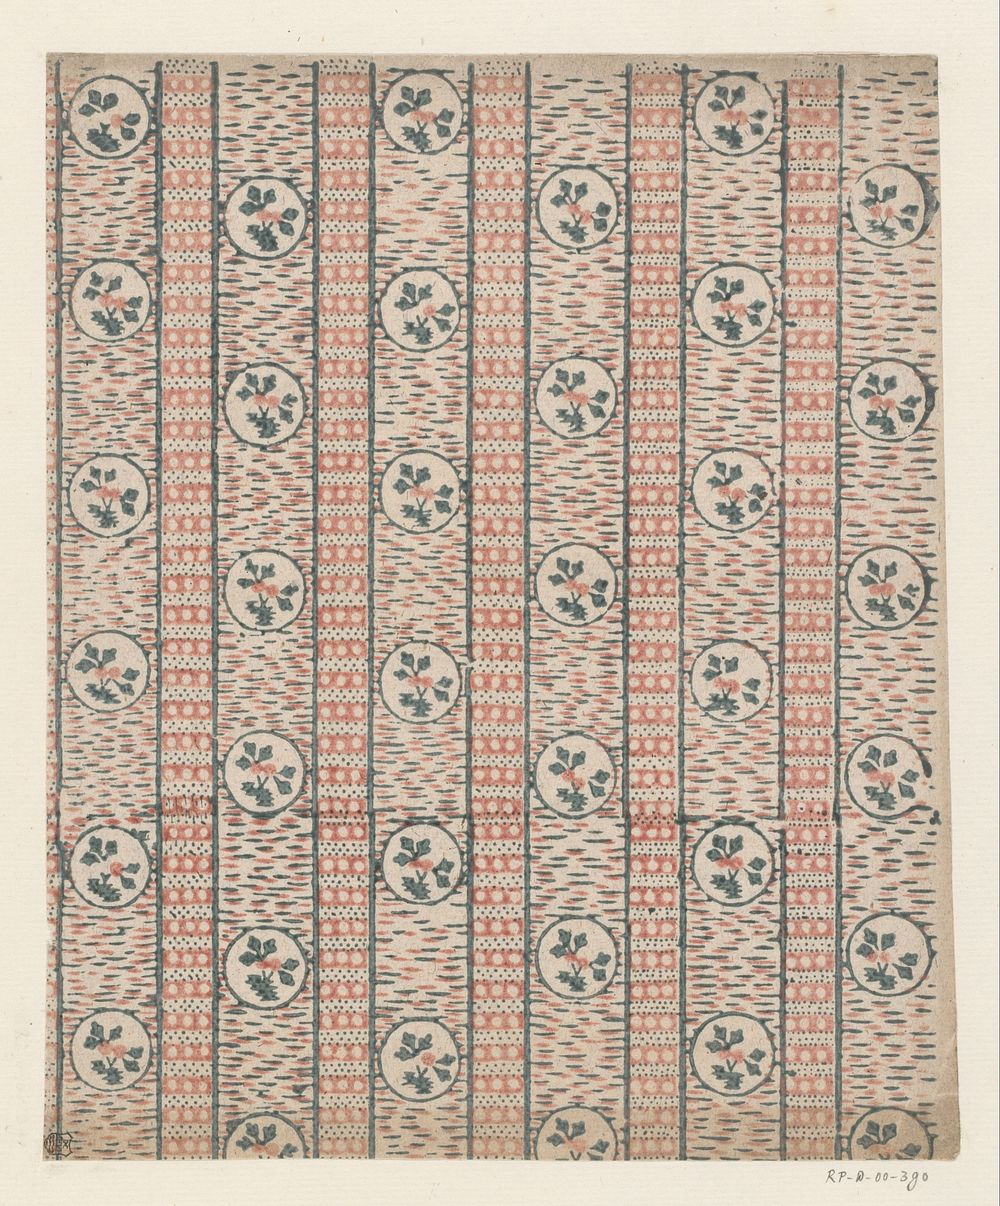 Blad met banenpatroon van rondje met tak met twee vruchten in sierlijst met stippen (1700 - 1850) by anonymous